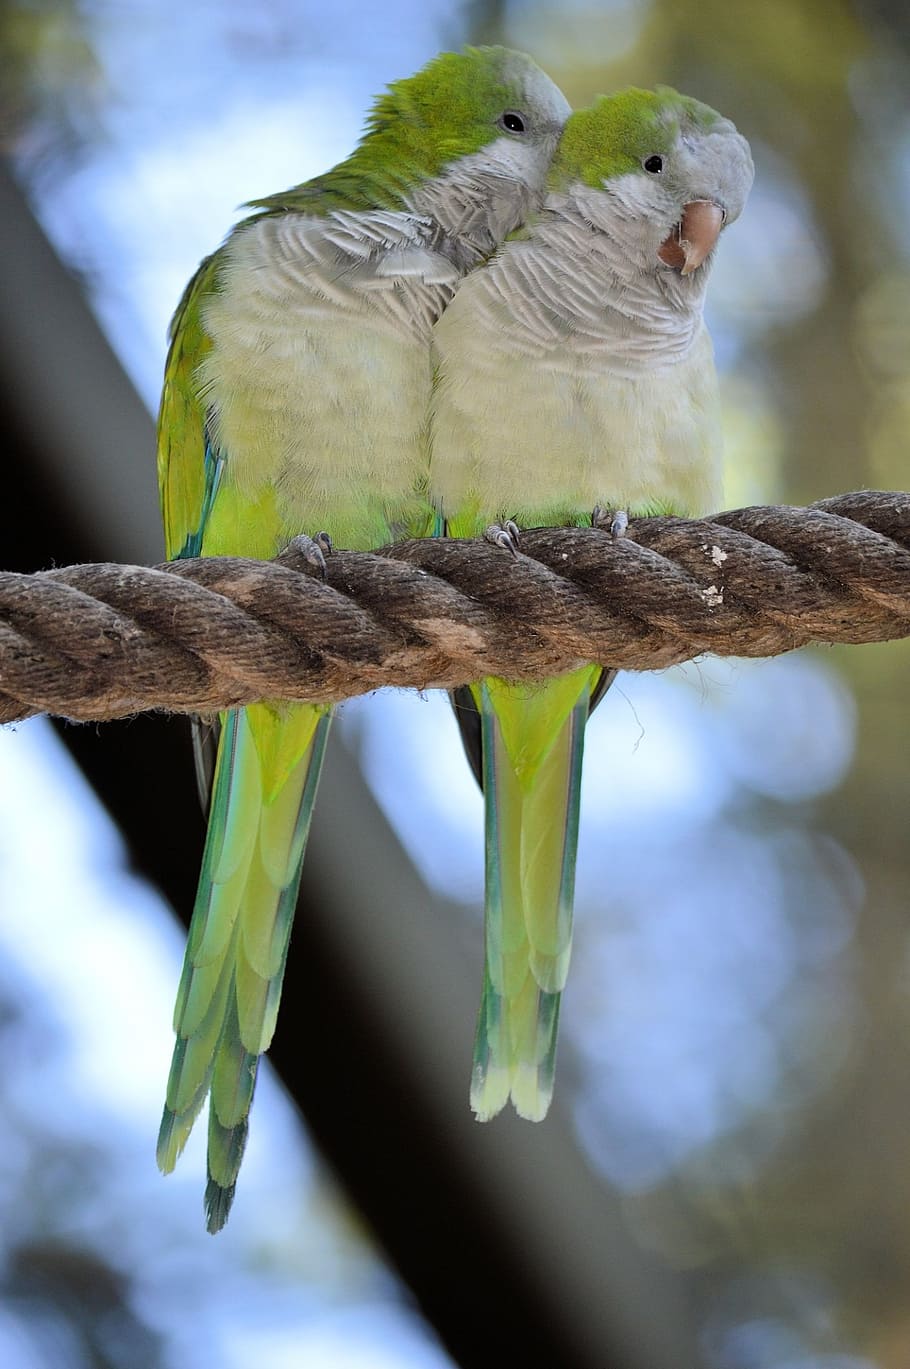 dos, pájaros verdes y blancos, encaramado, marrón, cuerda, loro, agapornis, pareja, pájaro, mosca